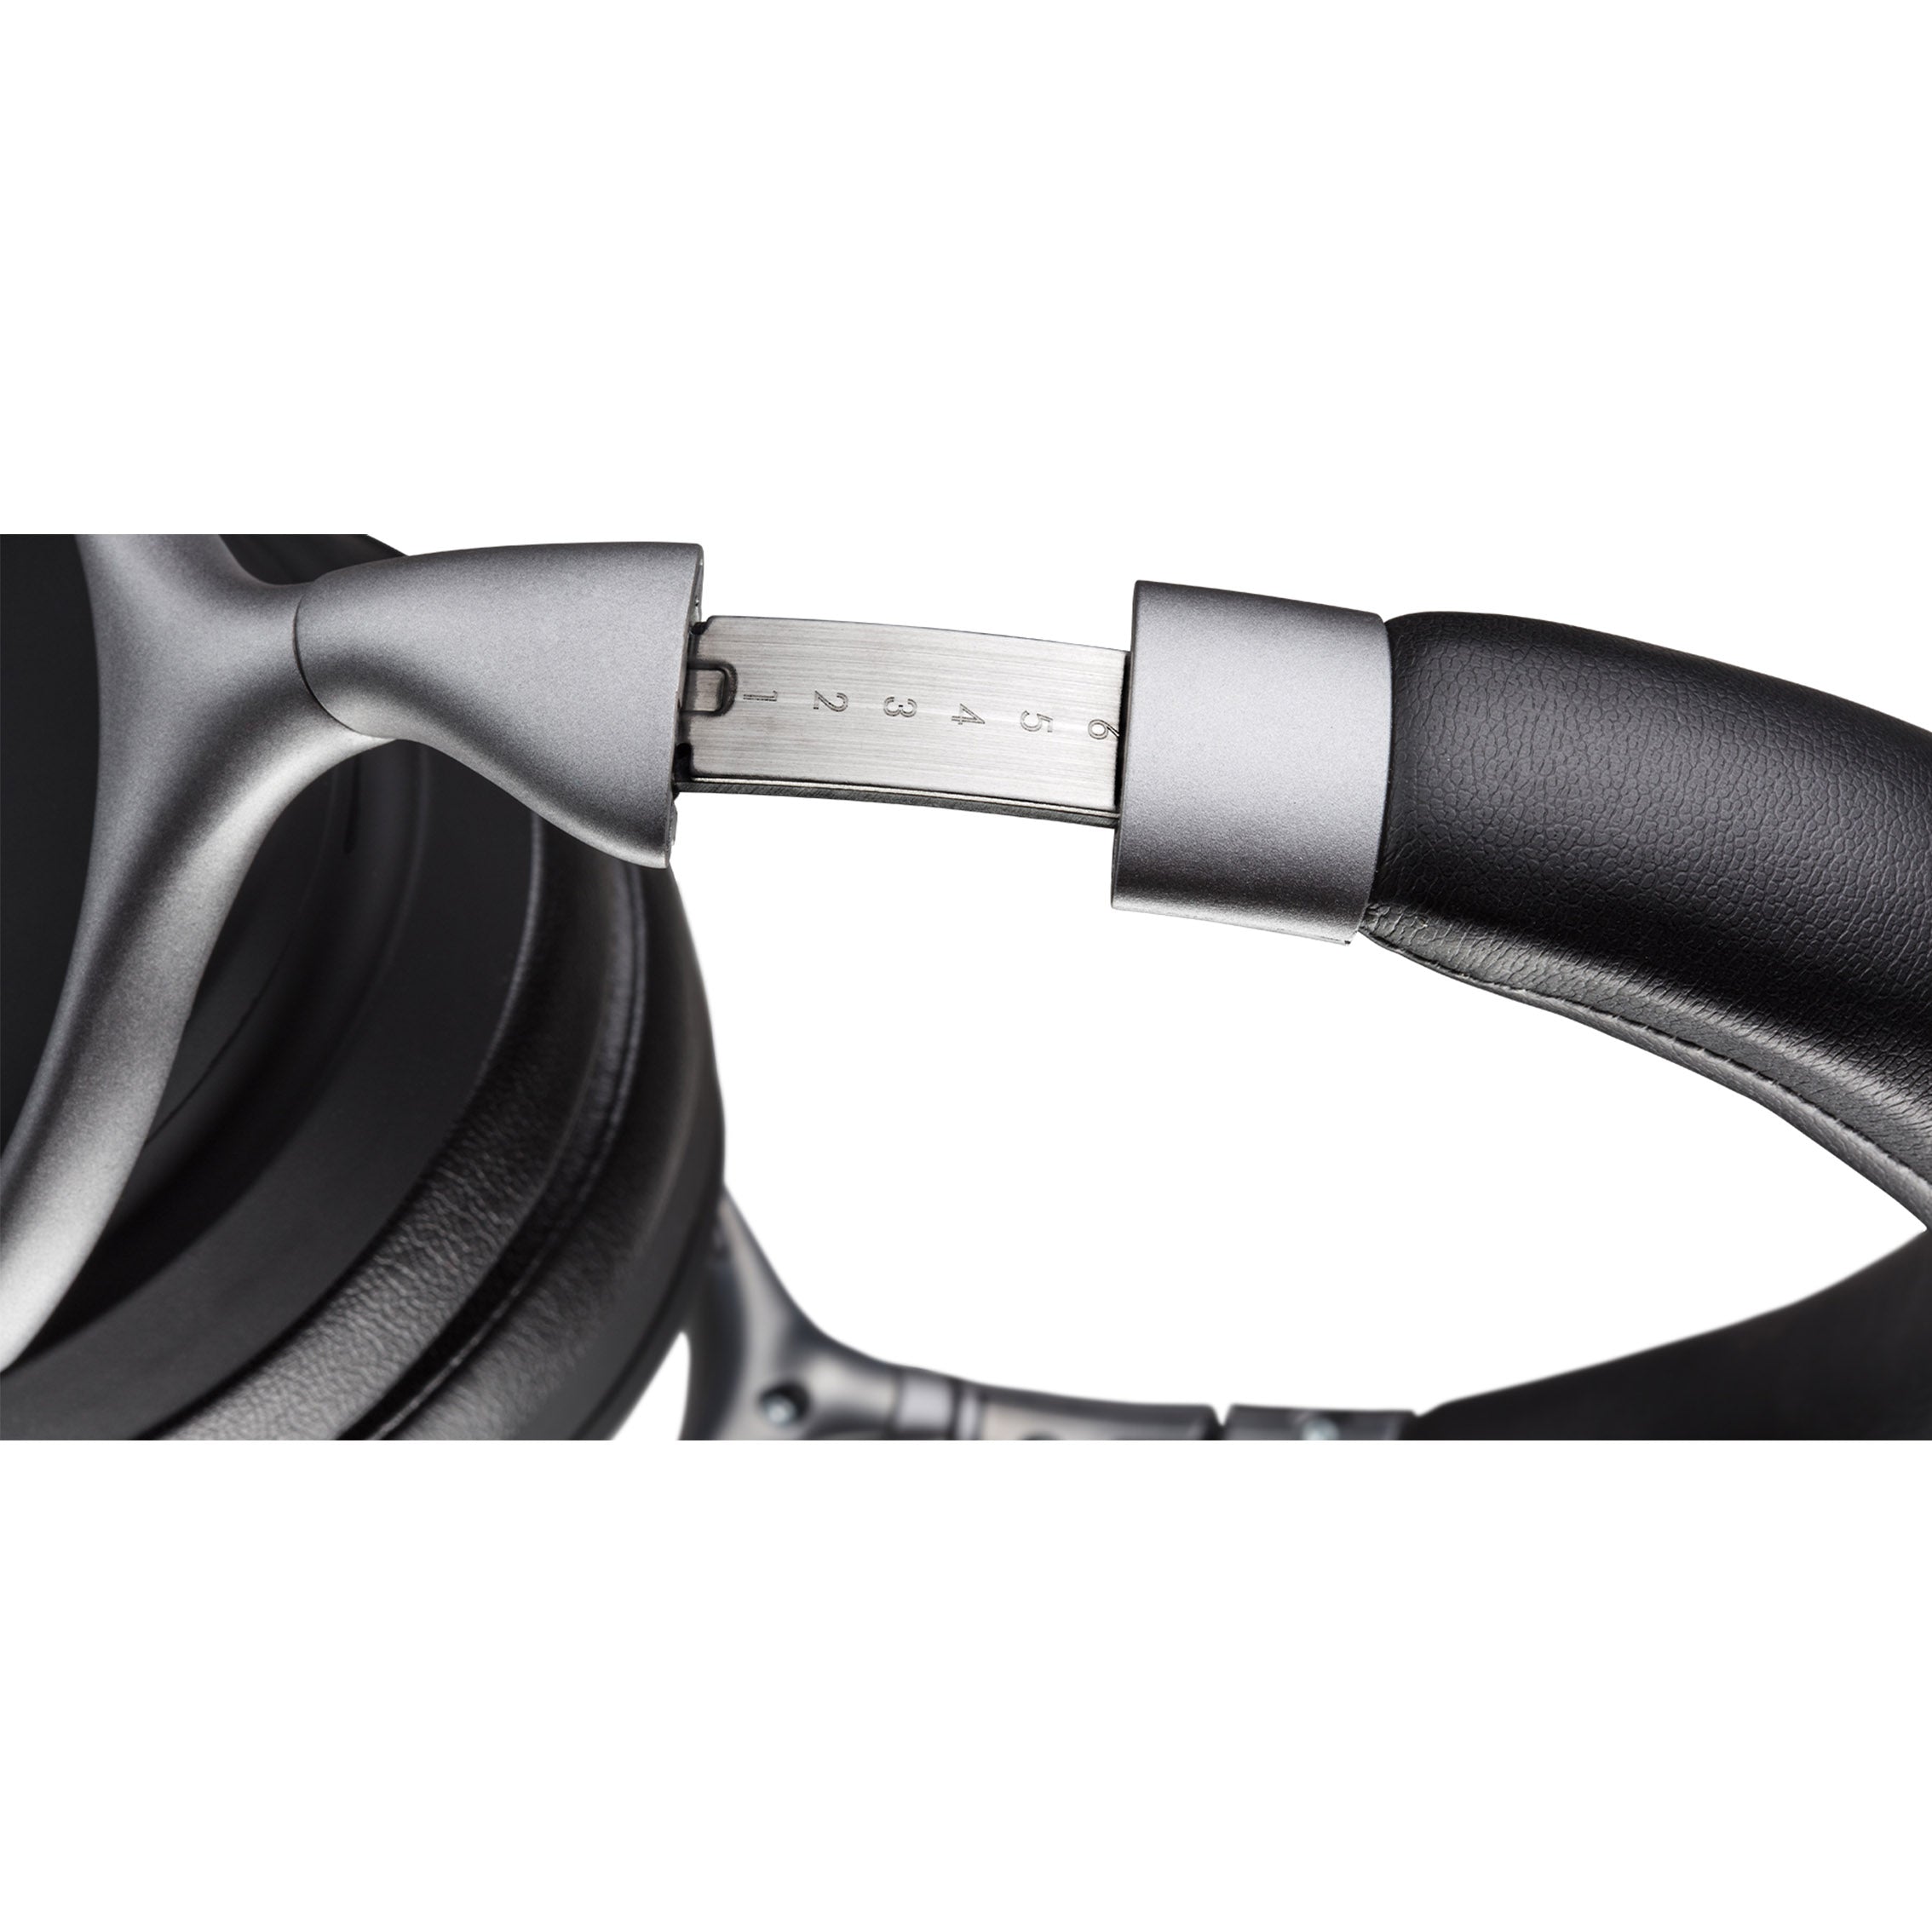 Denon AH-GC30 Wireless Noise-Canceling Over-Ear Headphones (Each)